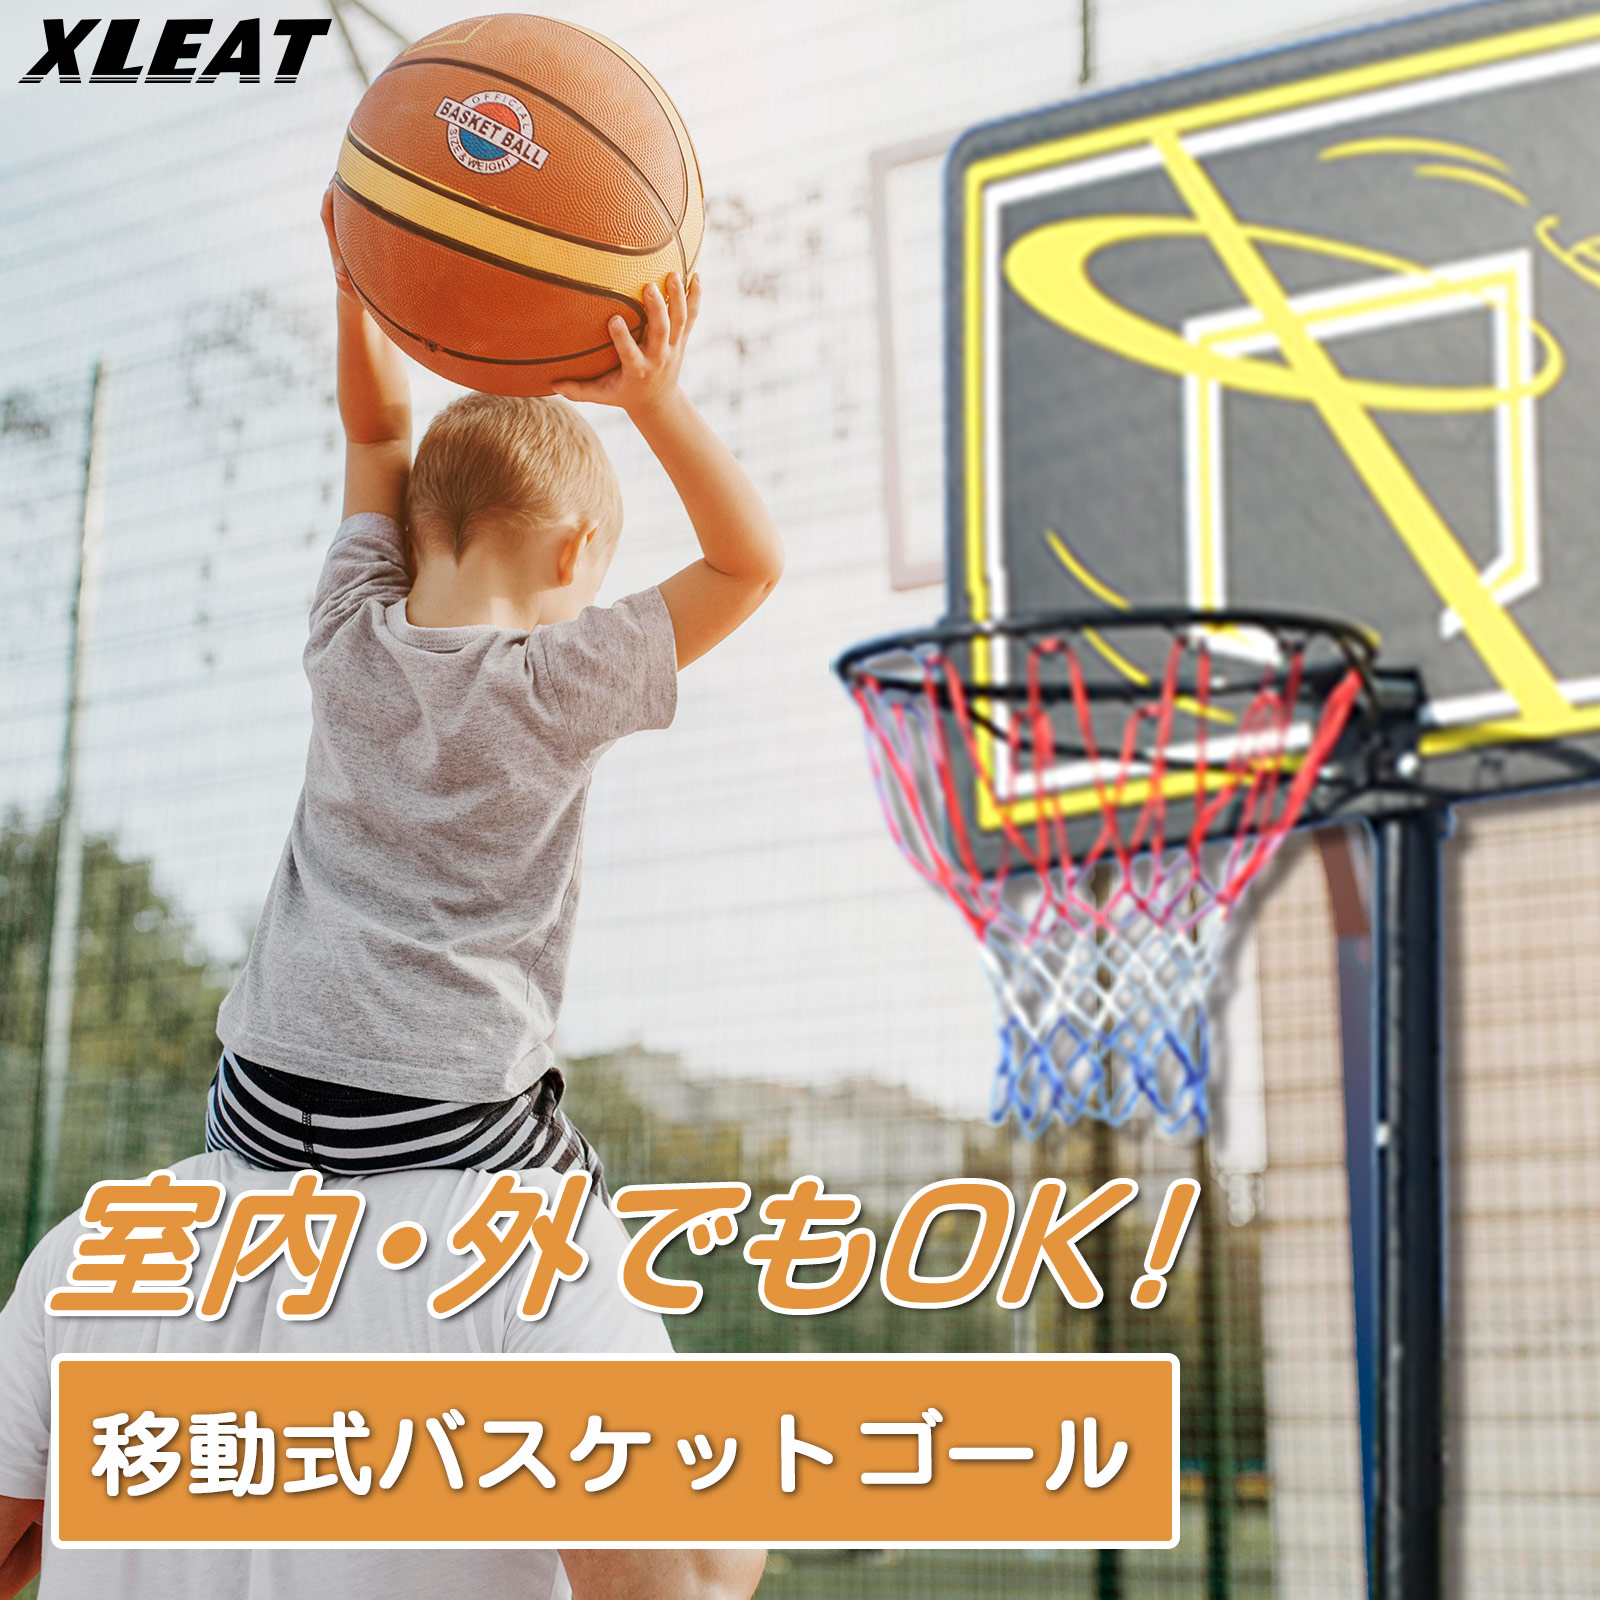 バスケットゴール 家庭用 屋外 庭 練習 5月中旬入荷予定 :basket-1